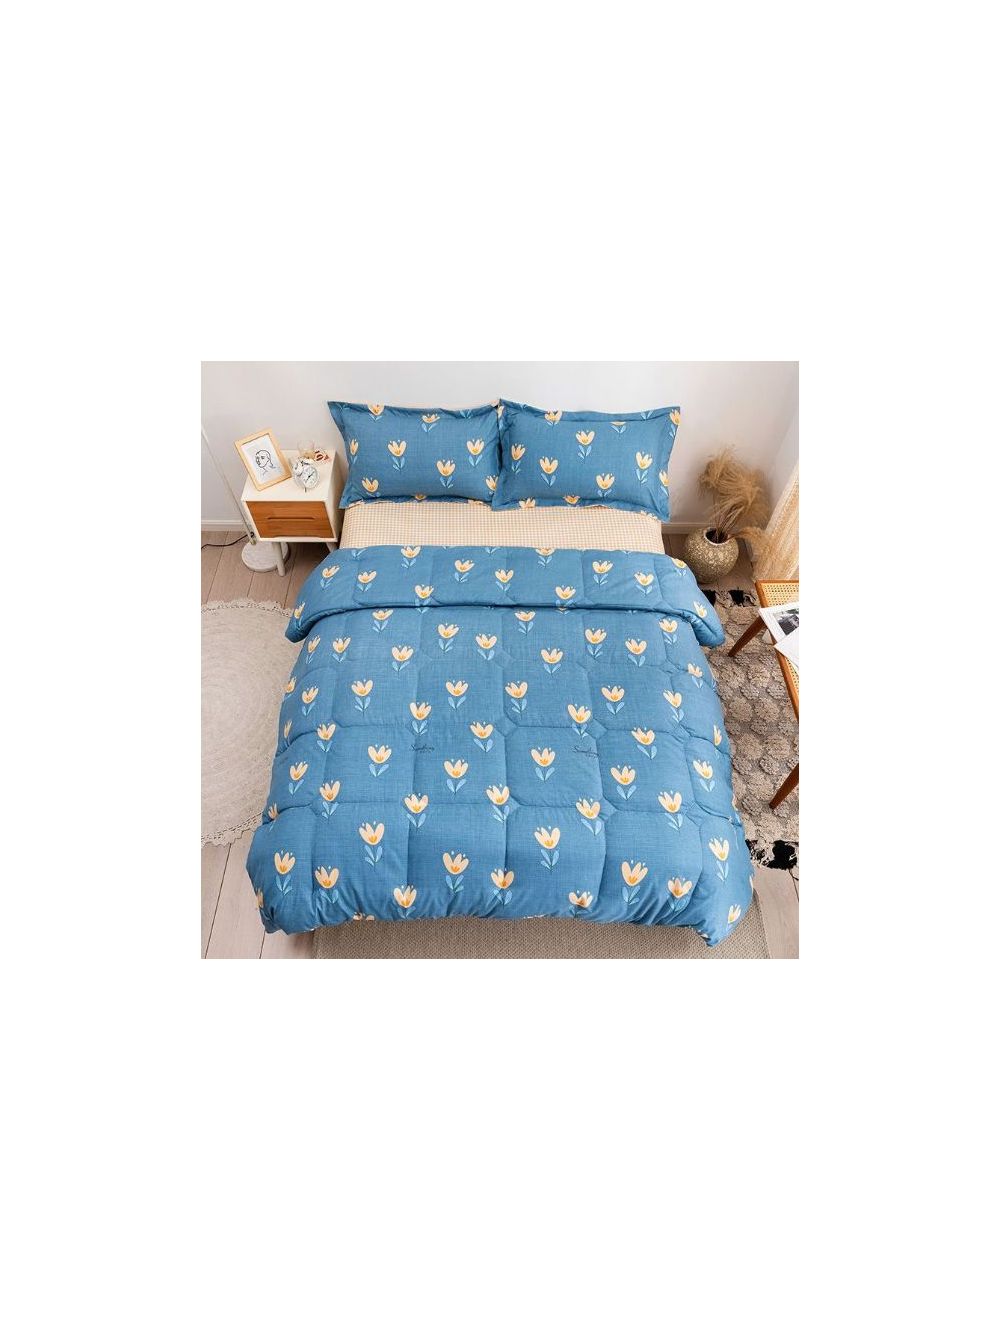 Rishahome 4 Piece Queen Size Comforter Set Microfiber Blue 210x230cm-KBLCS0004